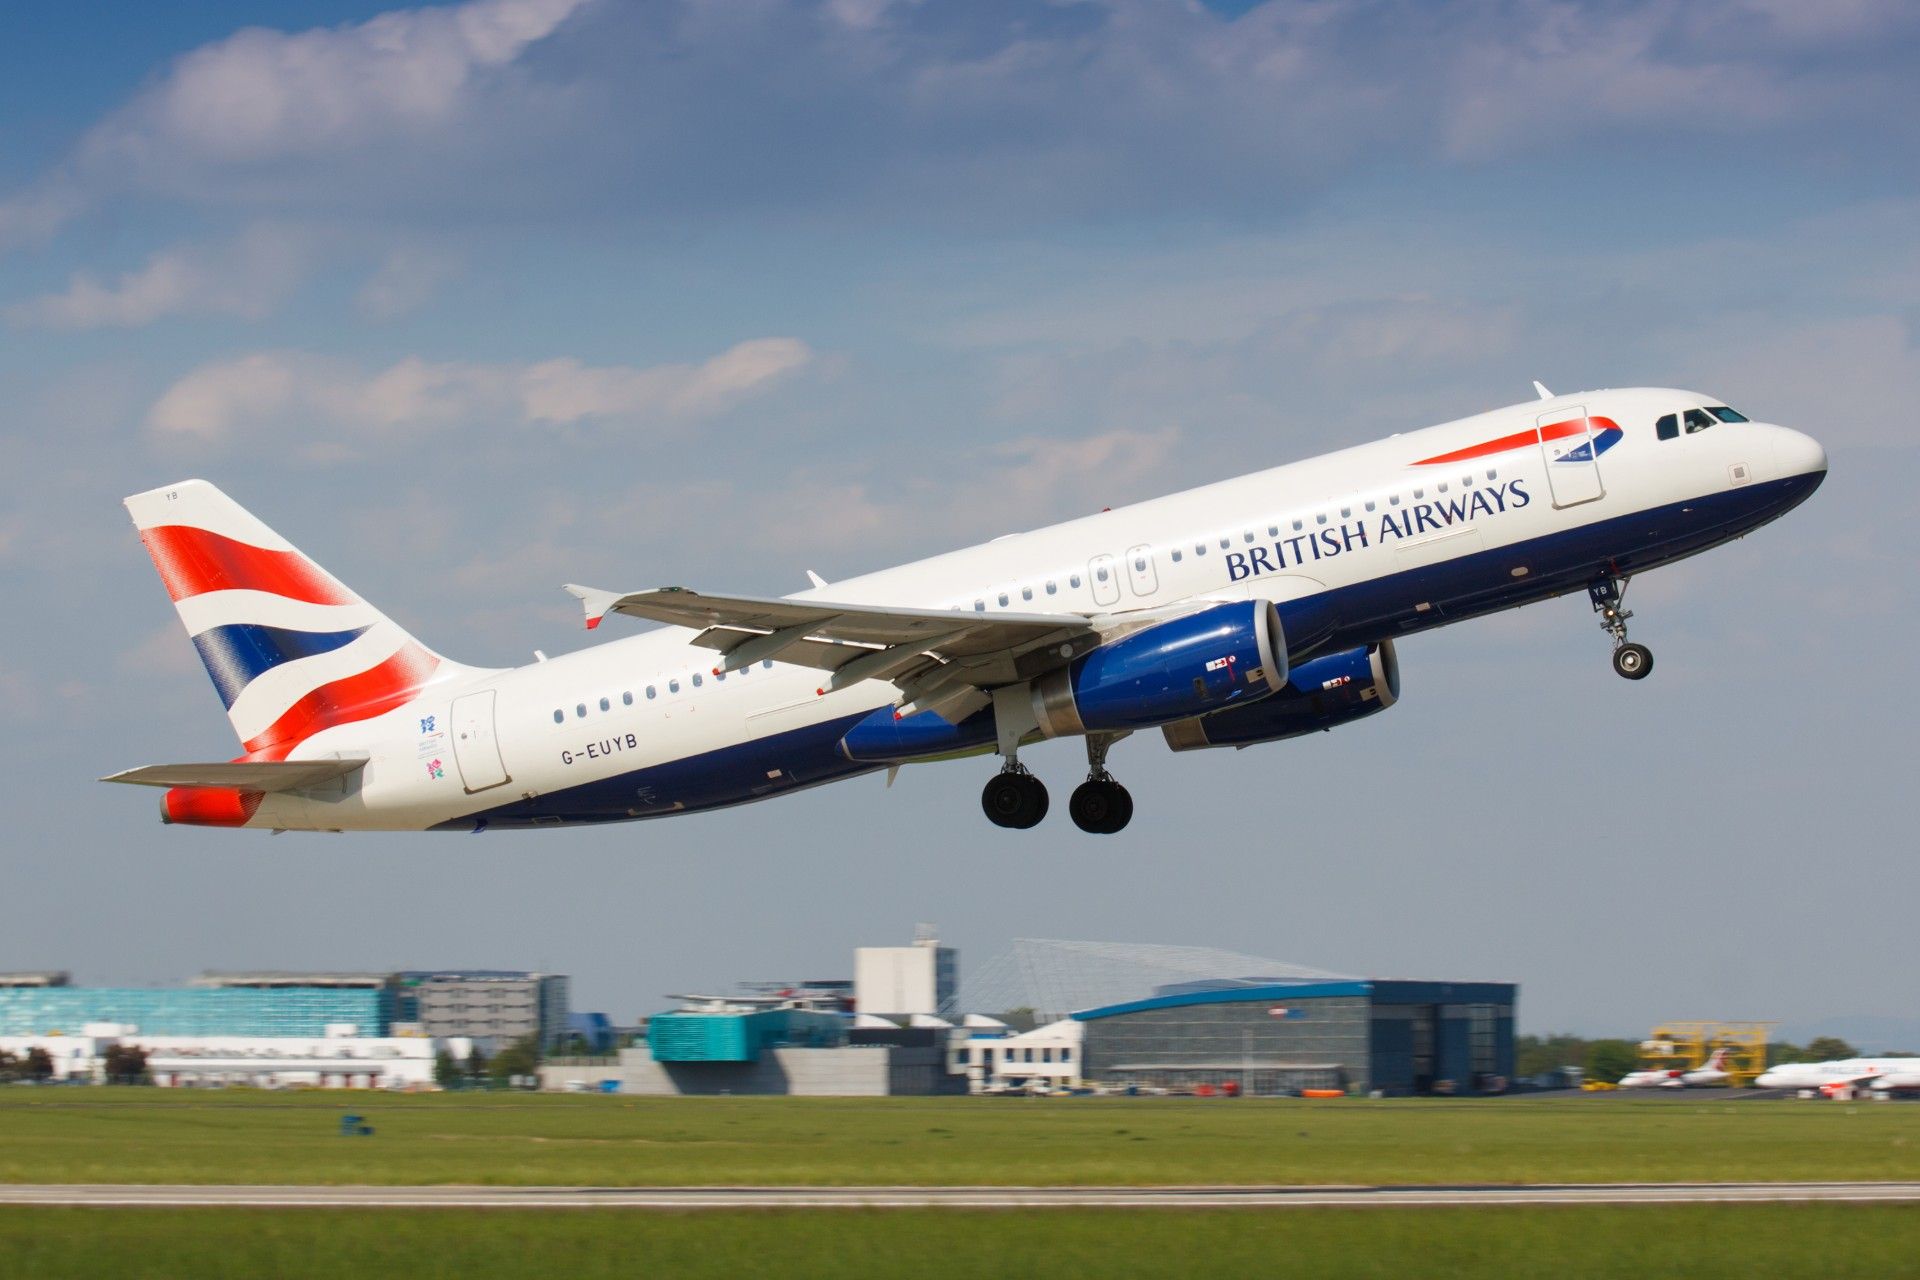 A British Airways plane takes off - British Airways data breach